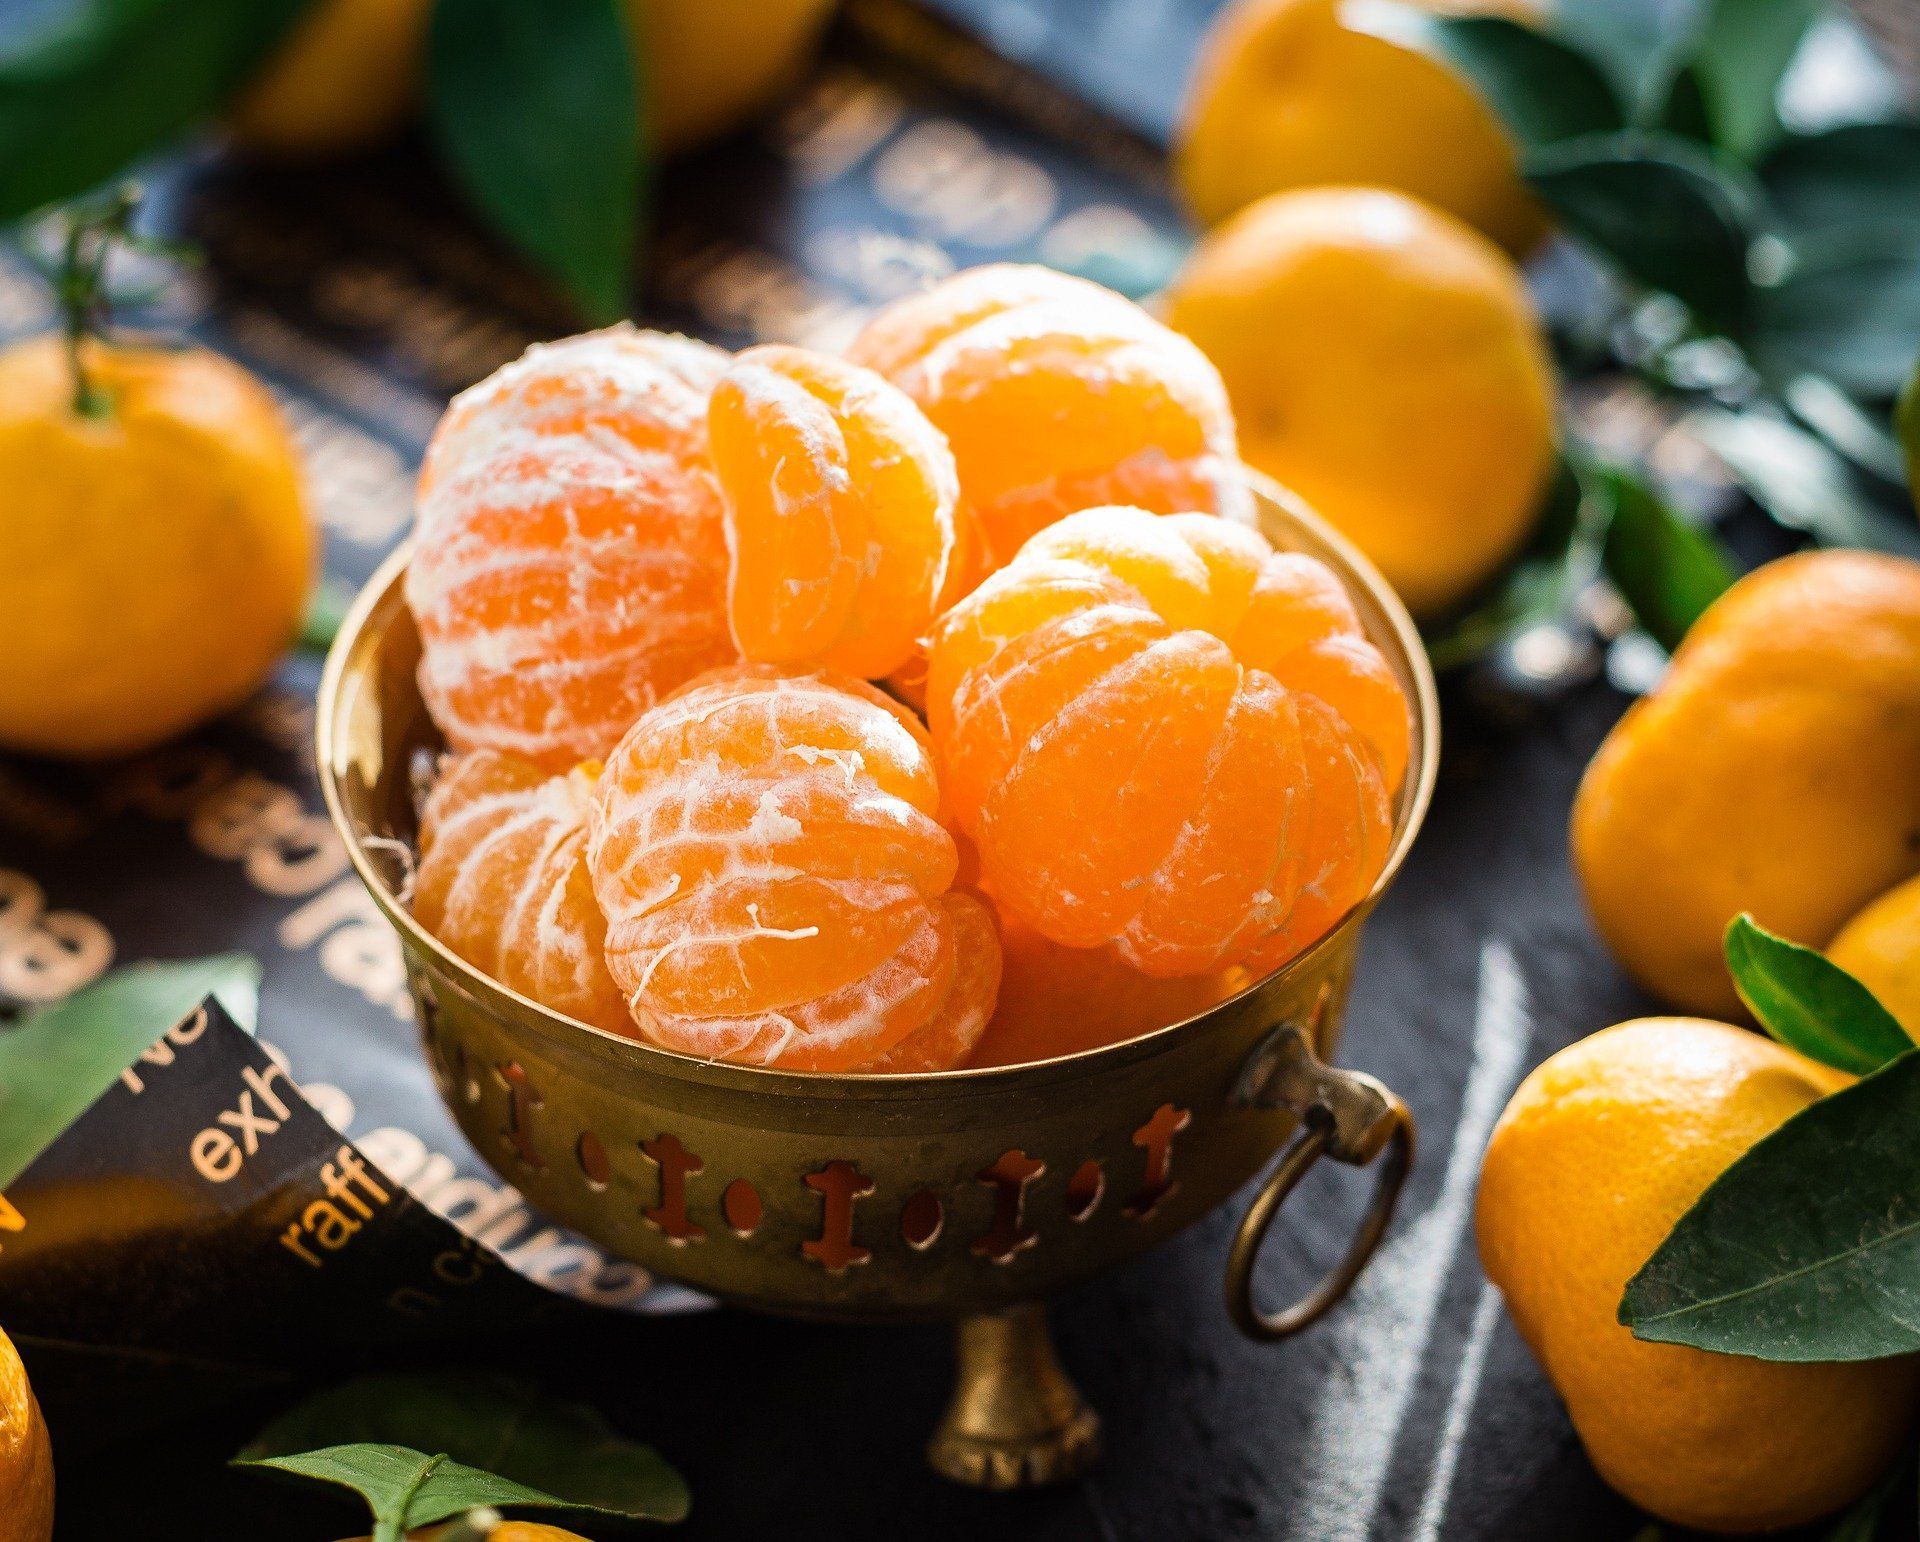 Las mandarinas y las naranjas del Mercadona, de origen nacional